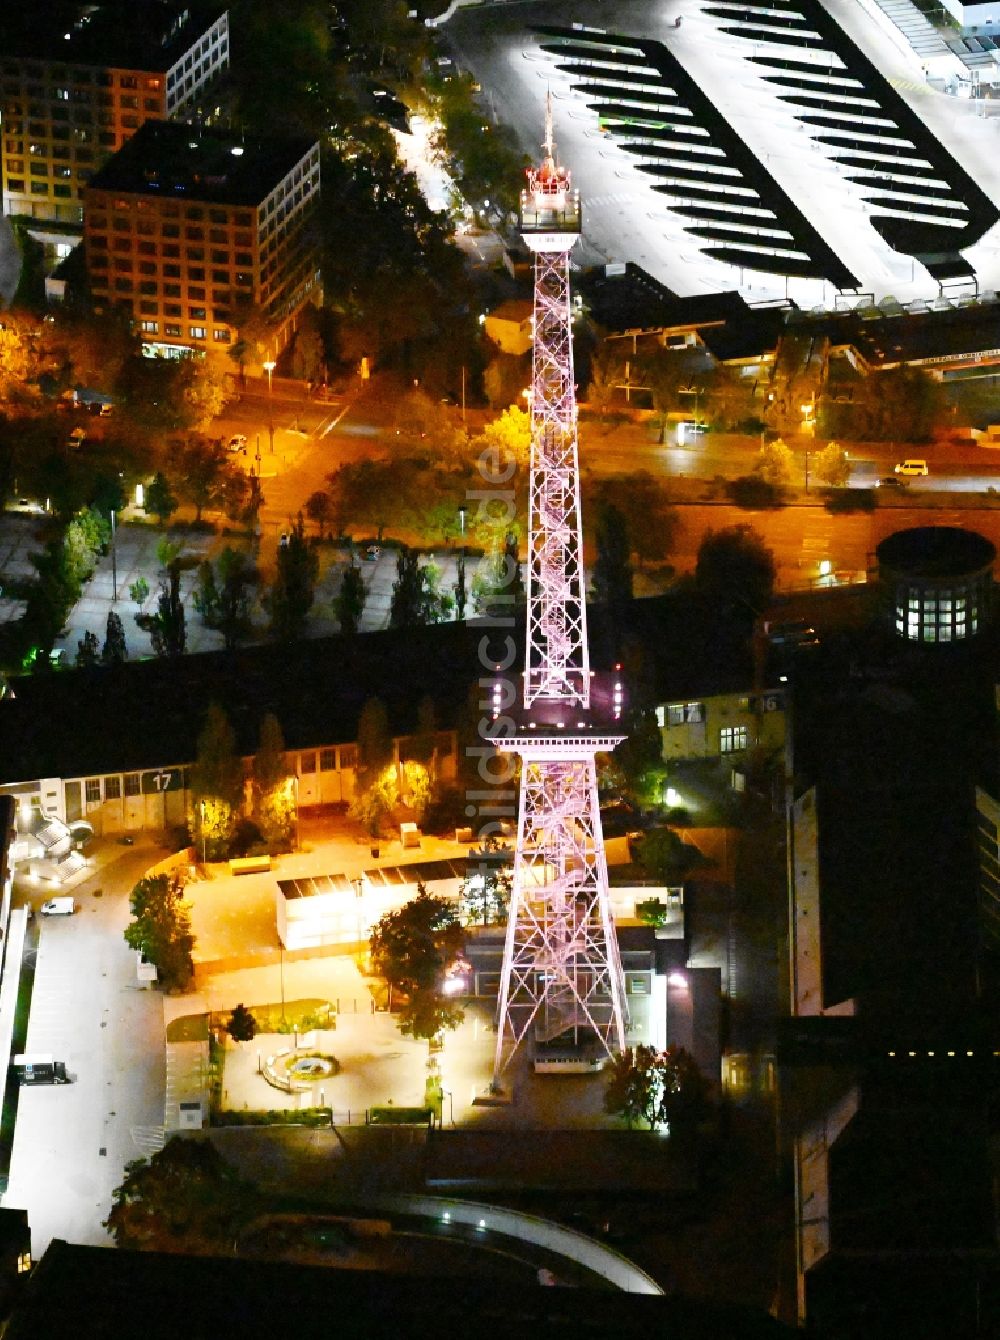 Nacht-Luftaufnahme Berlin - Nachtluftbild Tourismus- Attraktion und Sehenswürdigkeit Funkturm am Messegelände im Ortsteil Charlottenburg in Berlin, Deutschland